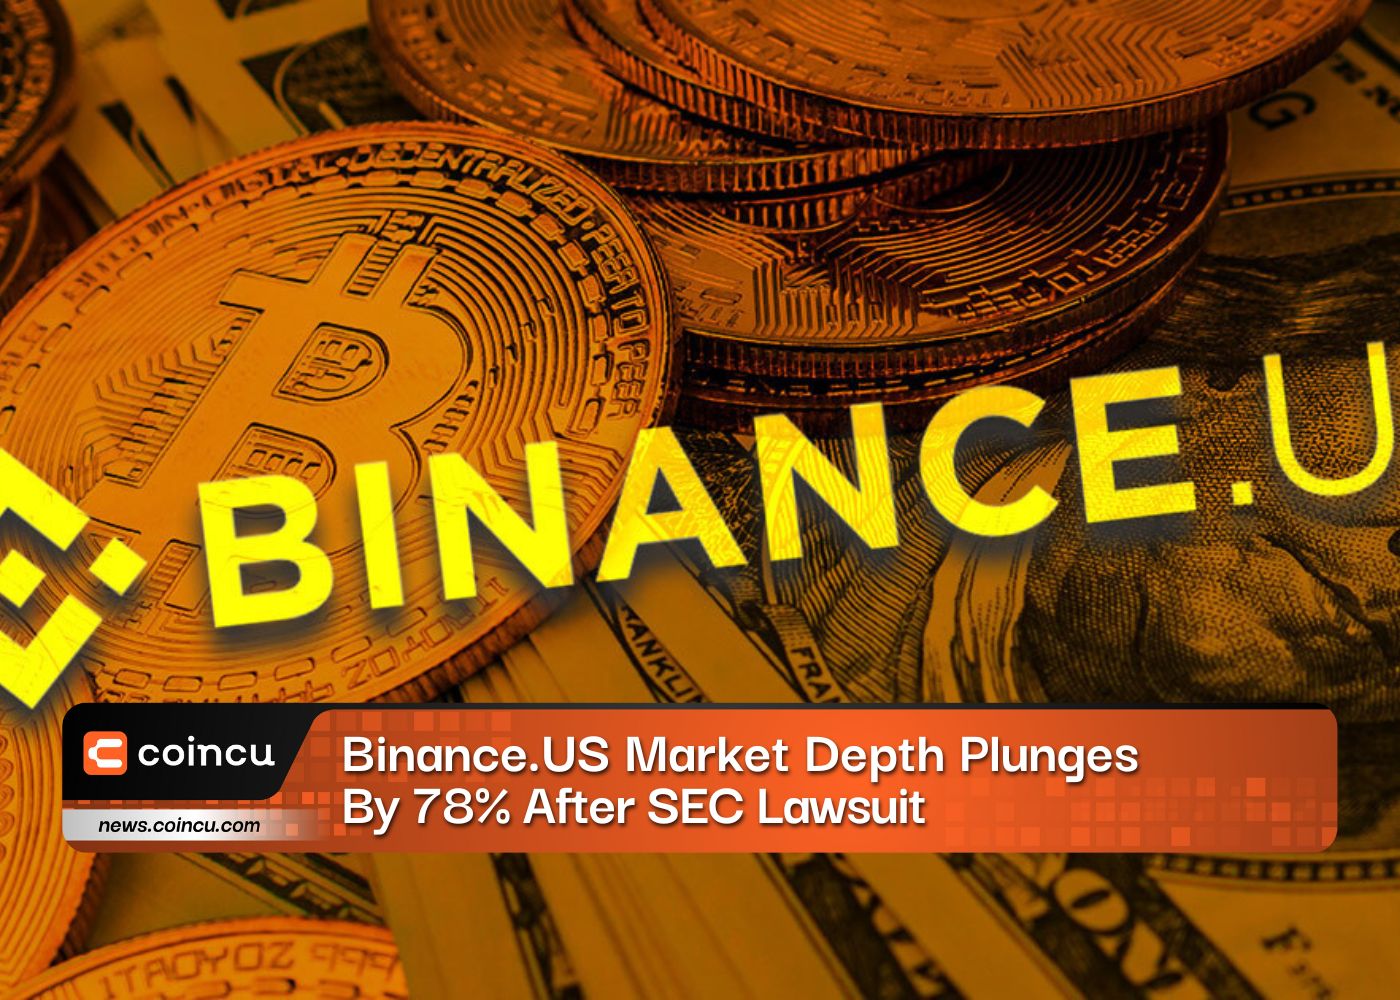 Binance.US Market Depth Plunges